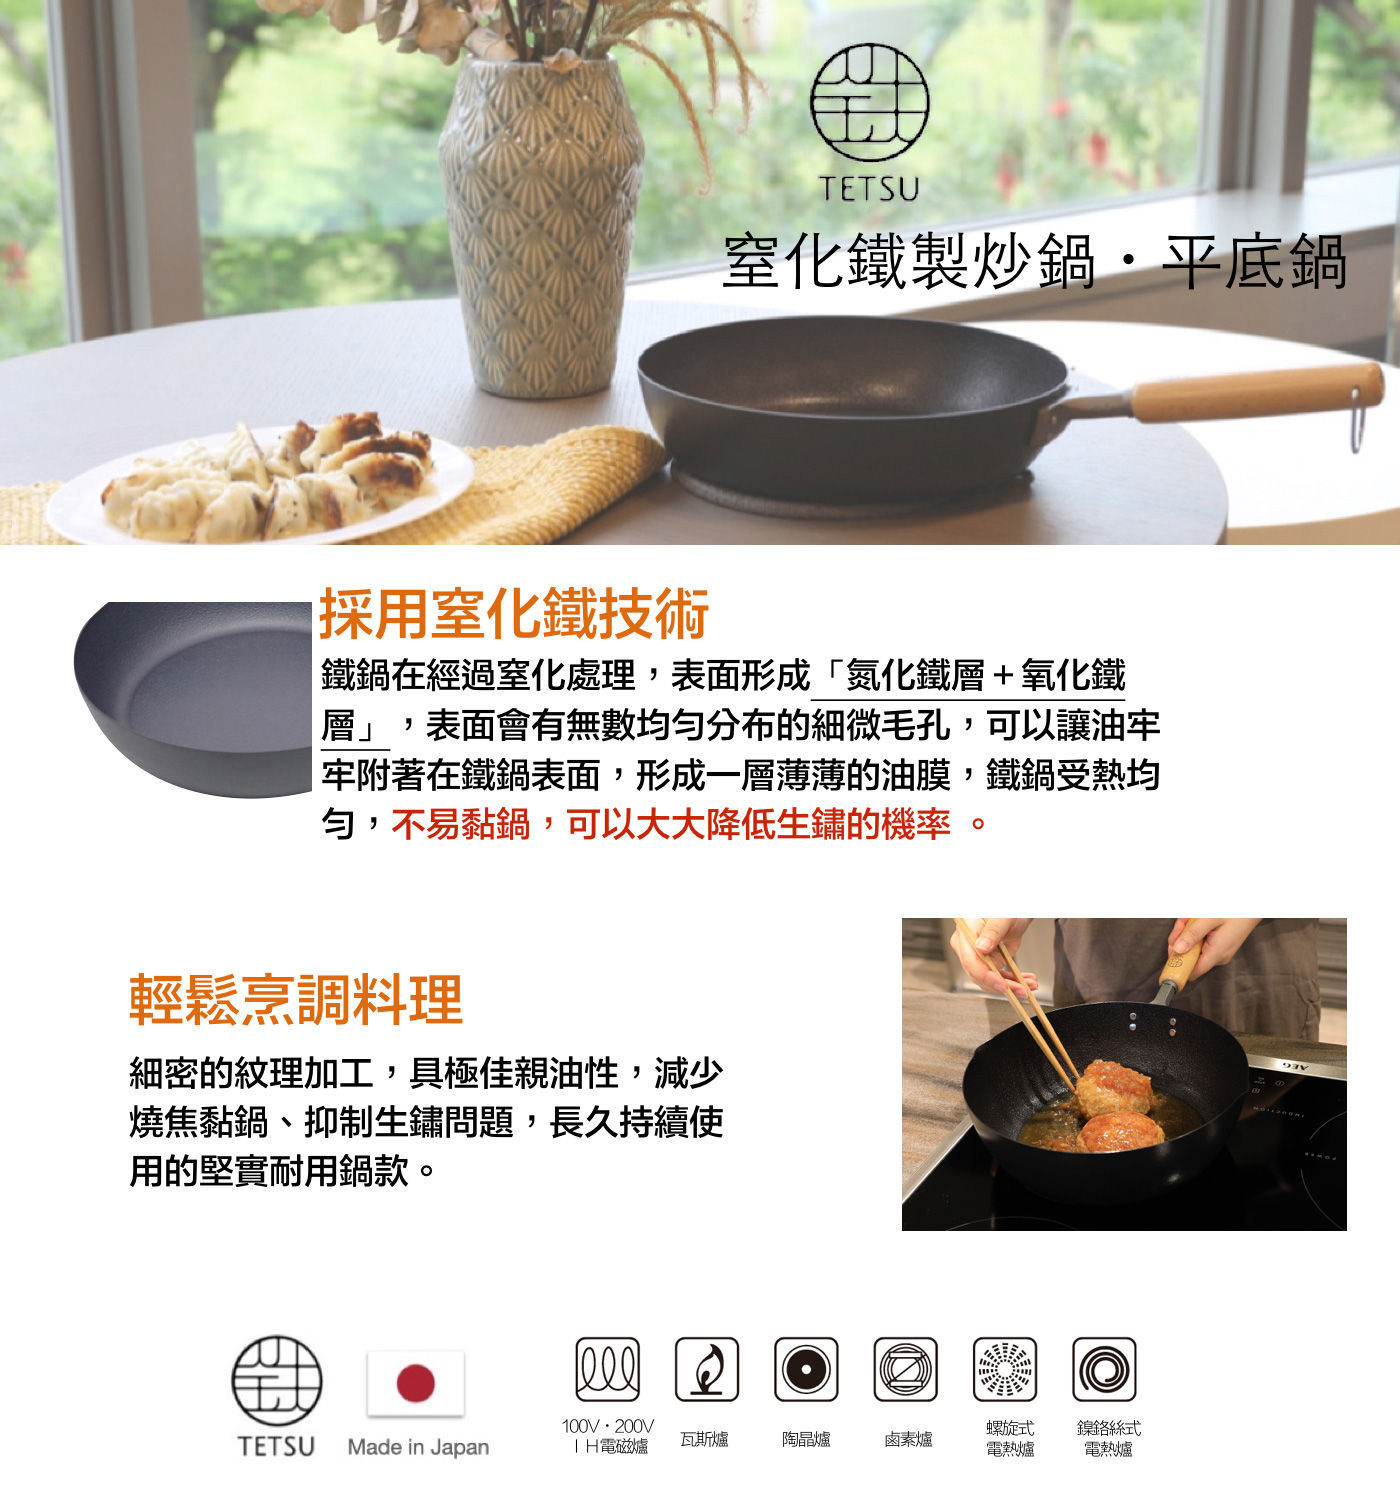 Tetsu 窒化鐵製炒鍋 採用窒化鐵技術